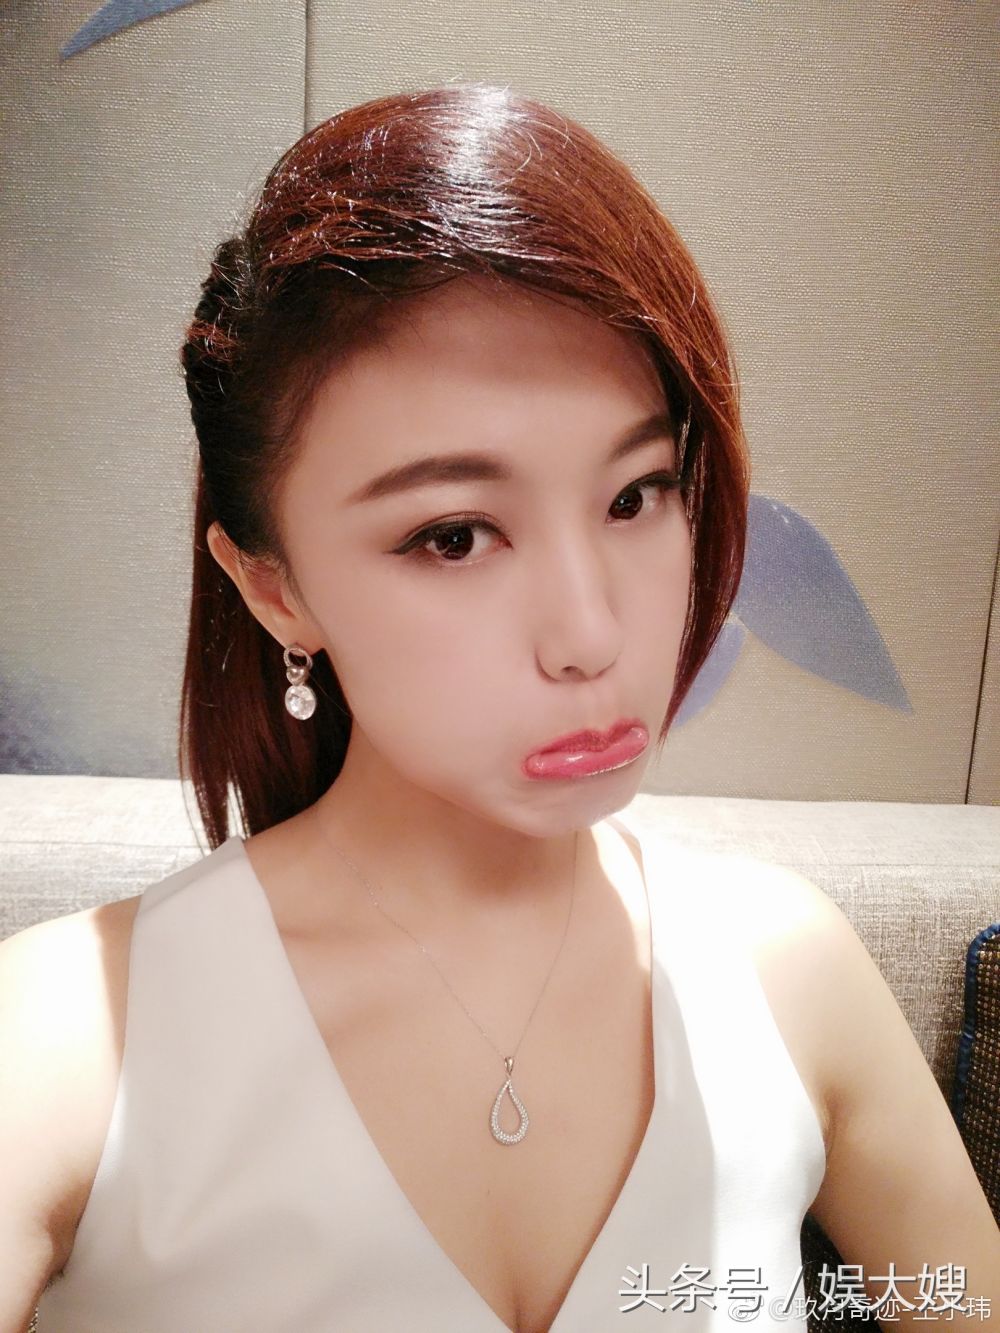 王小玮 Sexy and Hottest Photos , Latest Pics